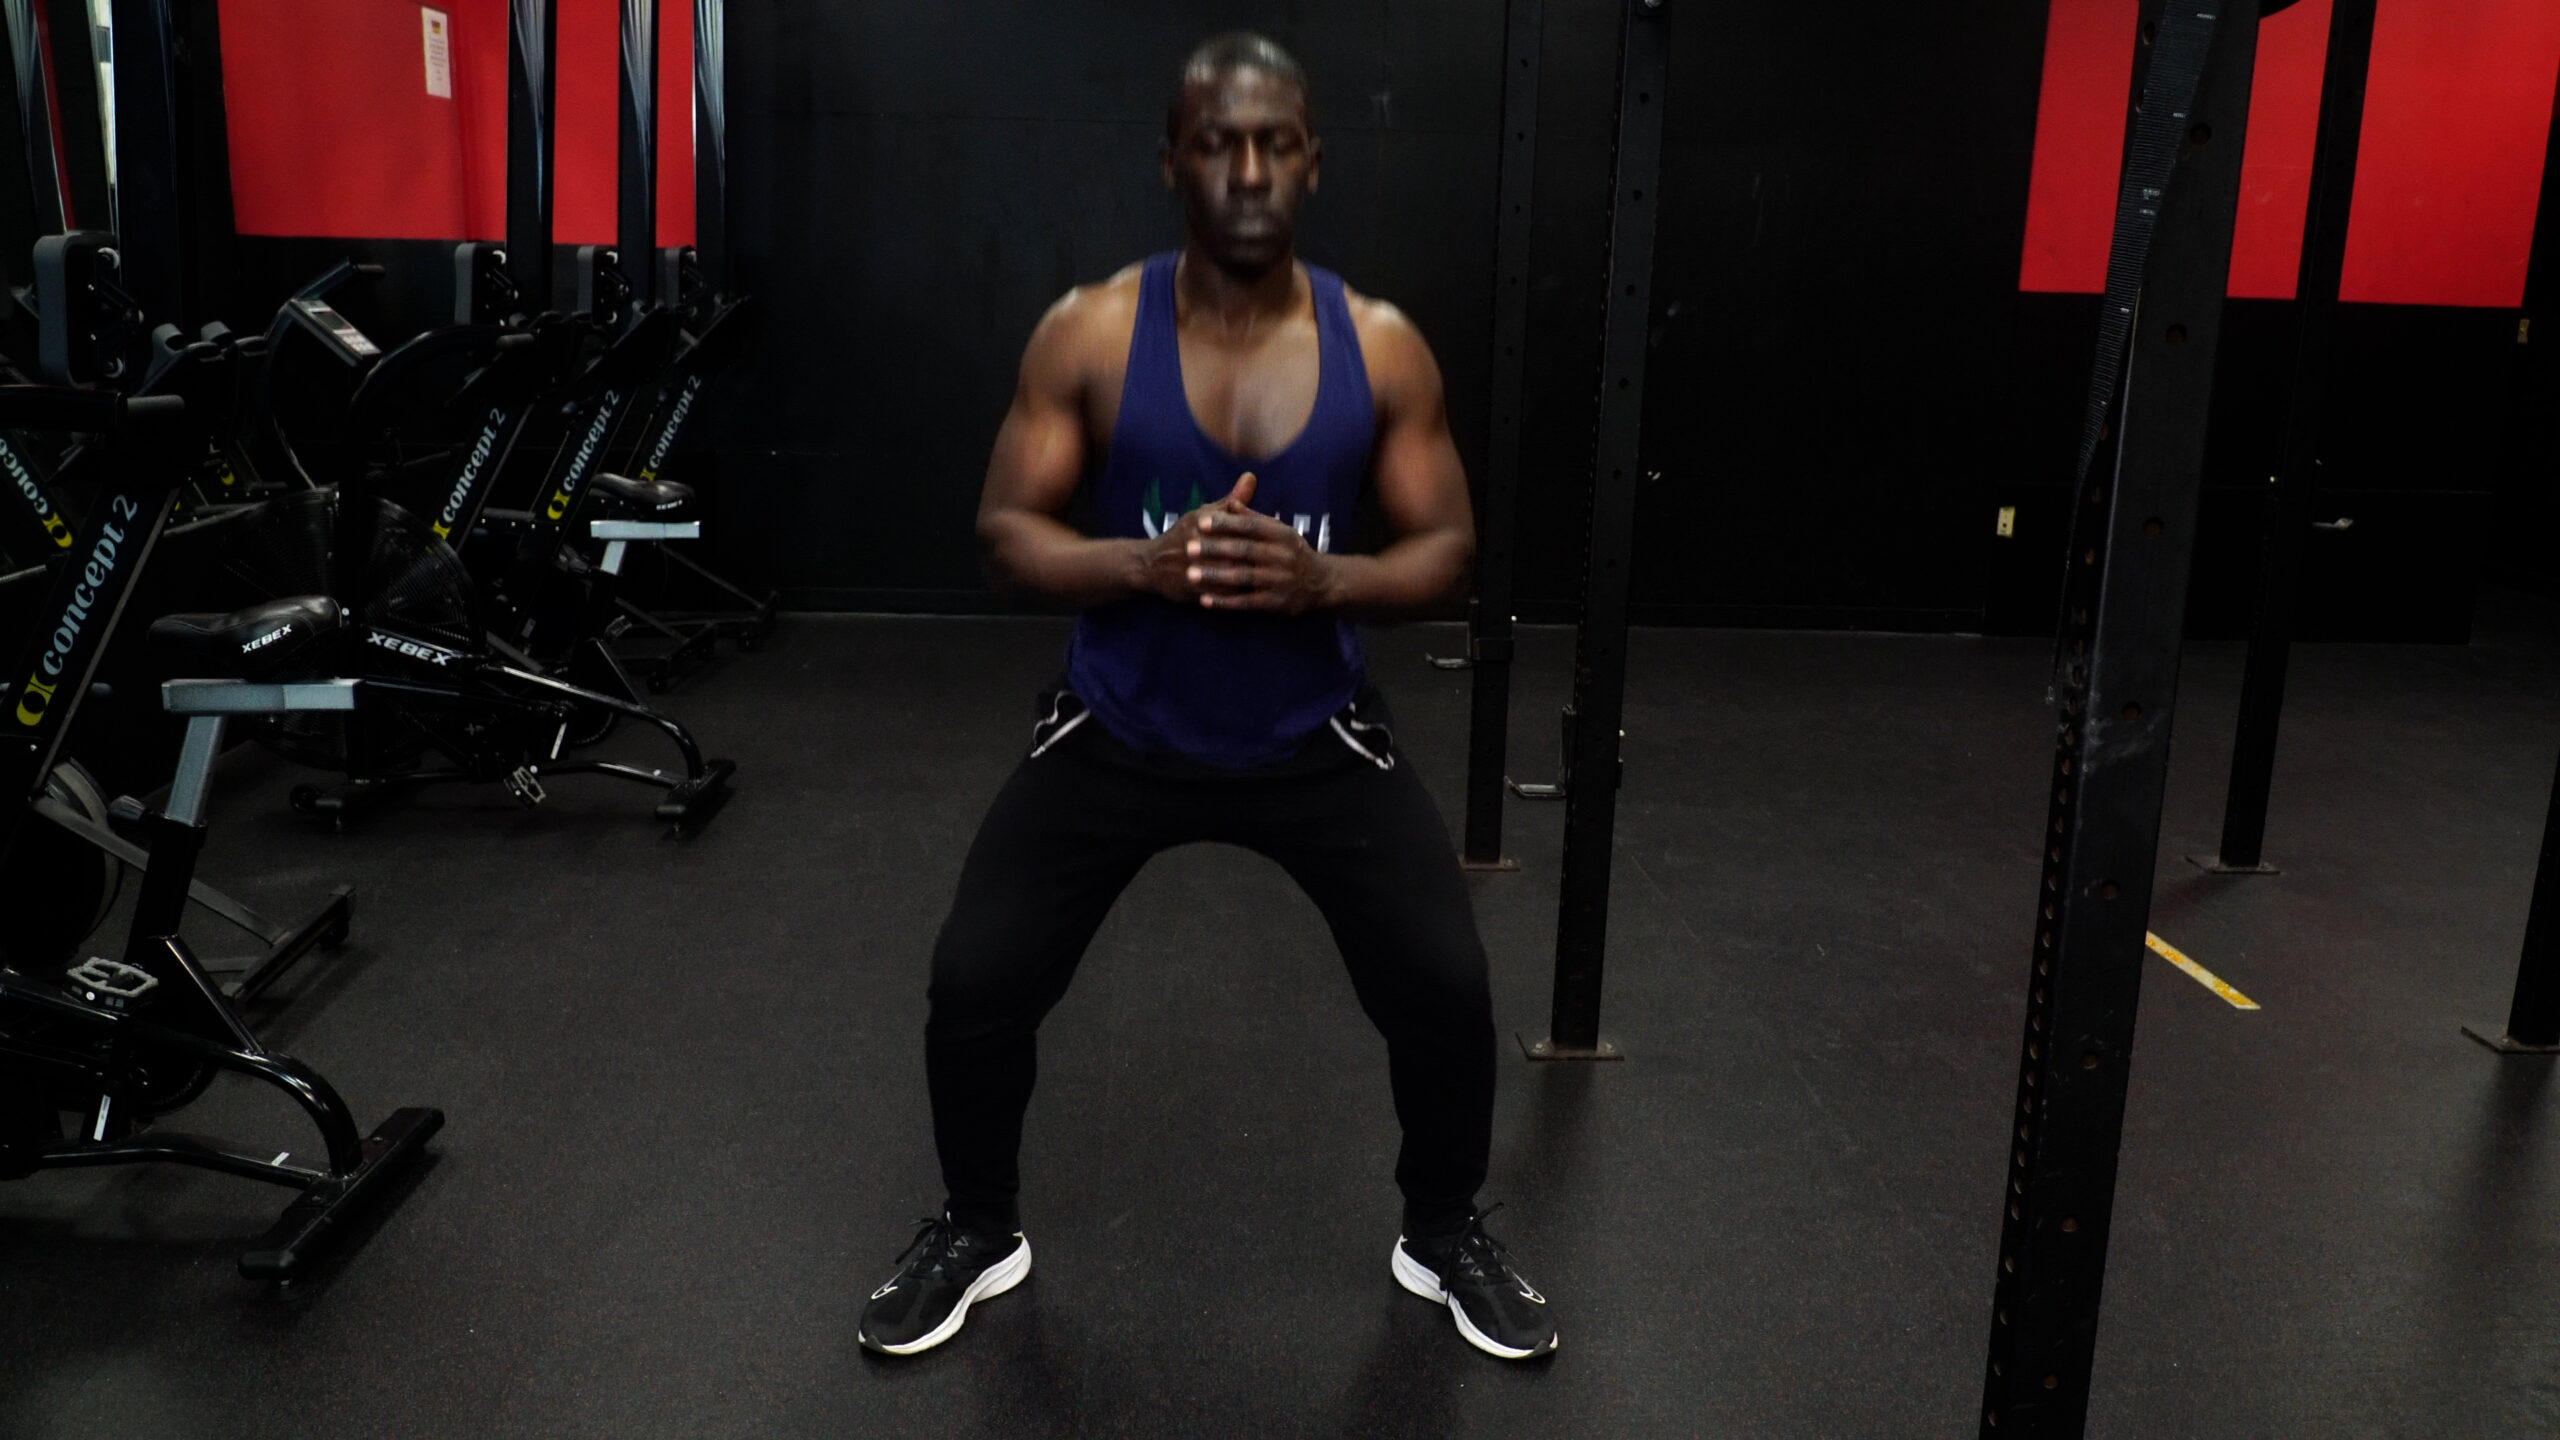 metabolic squats 4 week workout plan to lose weight